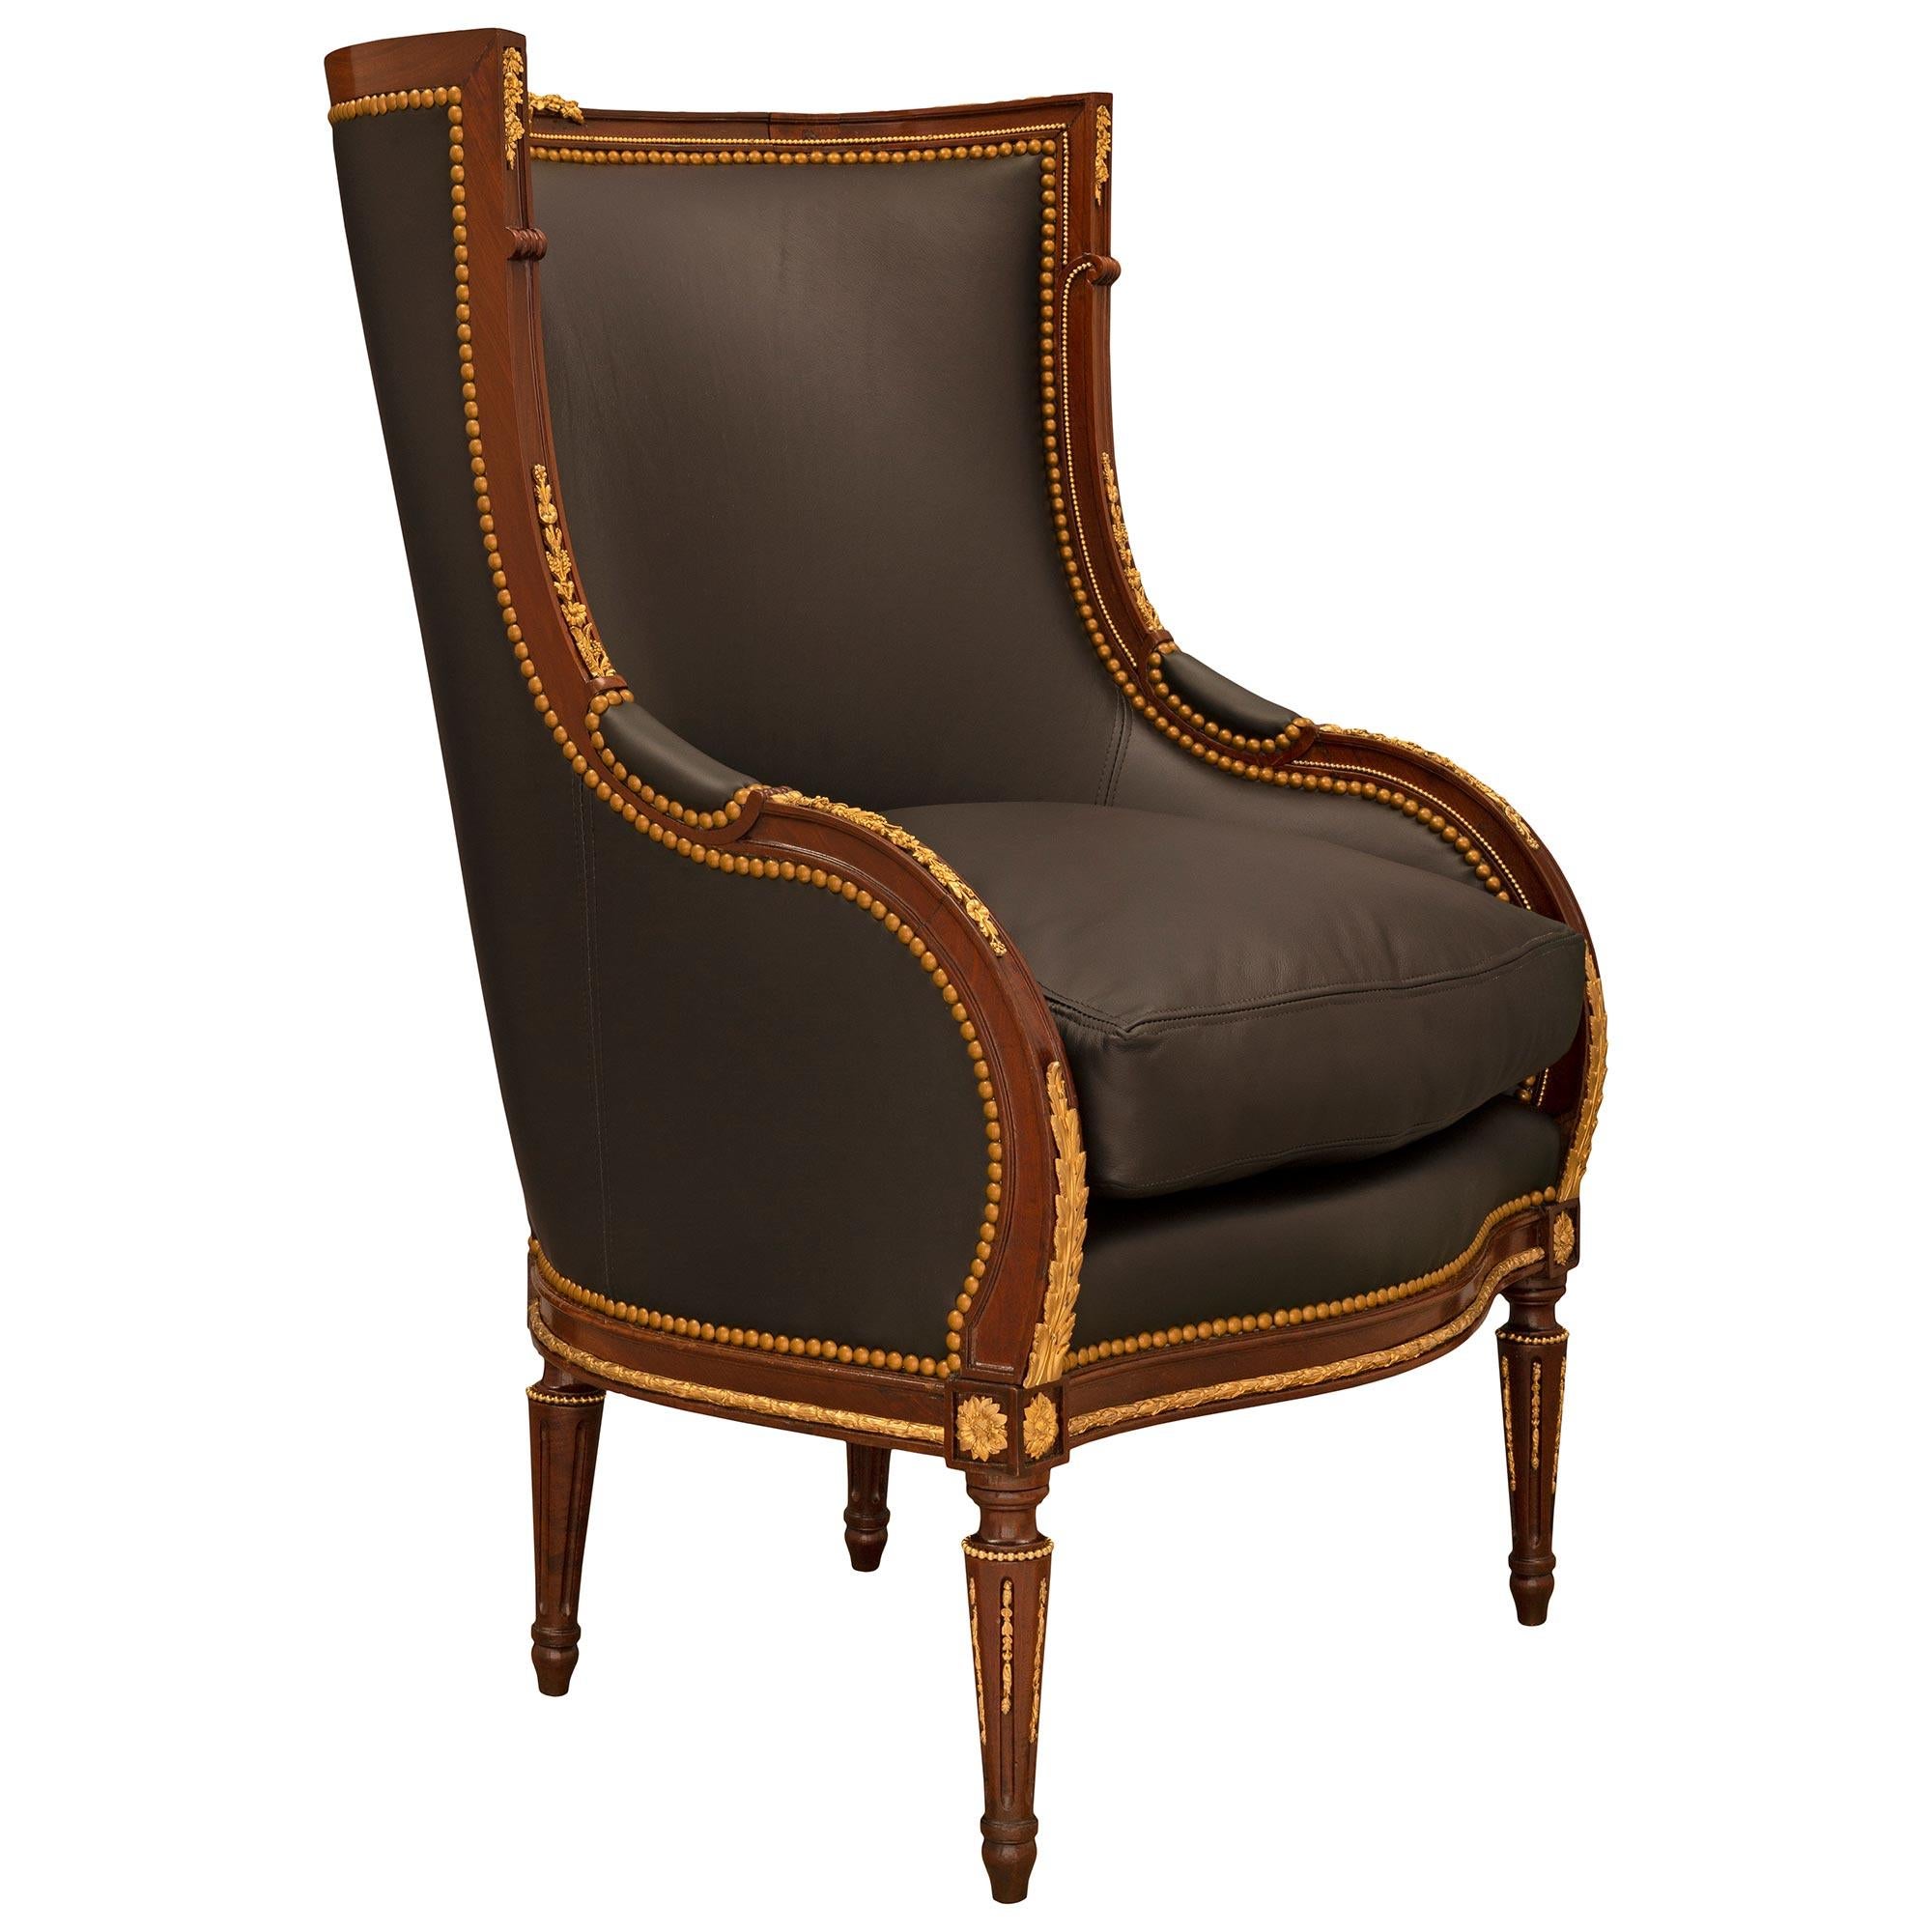 Ein auffallender und sehr eleganter französischer Louis XVI-Sessel aus Mahagoni und Ormolu aus dem 19. Der Stuhl wird von feinen kreisförmigen kannelierten konischen Beinen mit topie-förmigen Füßen, schönen eingefügten blattförmigen Ormolu